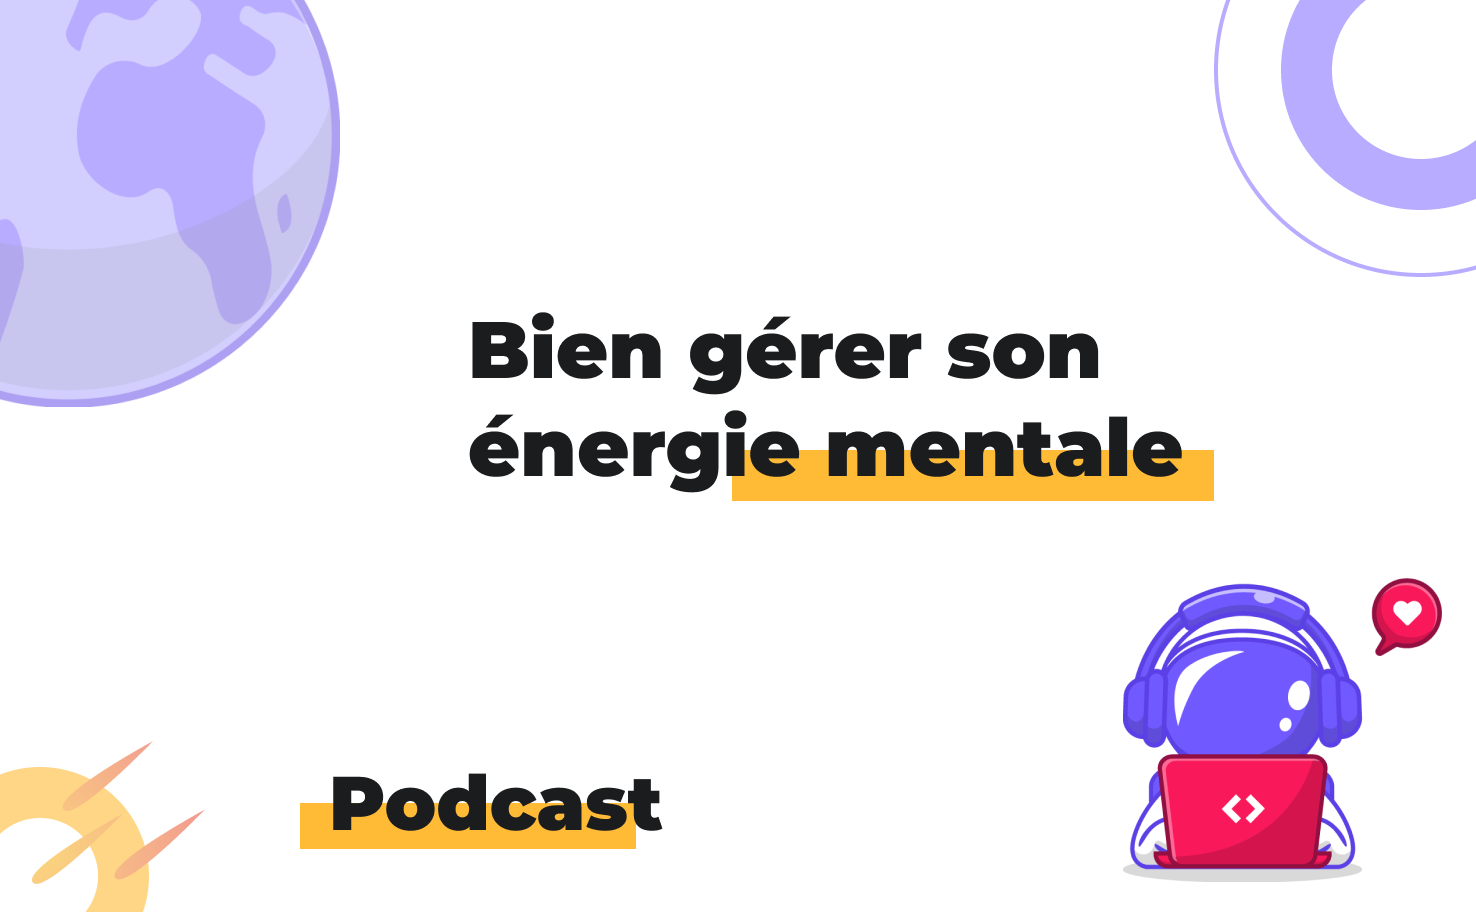 L'image affiche le sujet du podcast: Bien gérer son énergie mentale